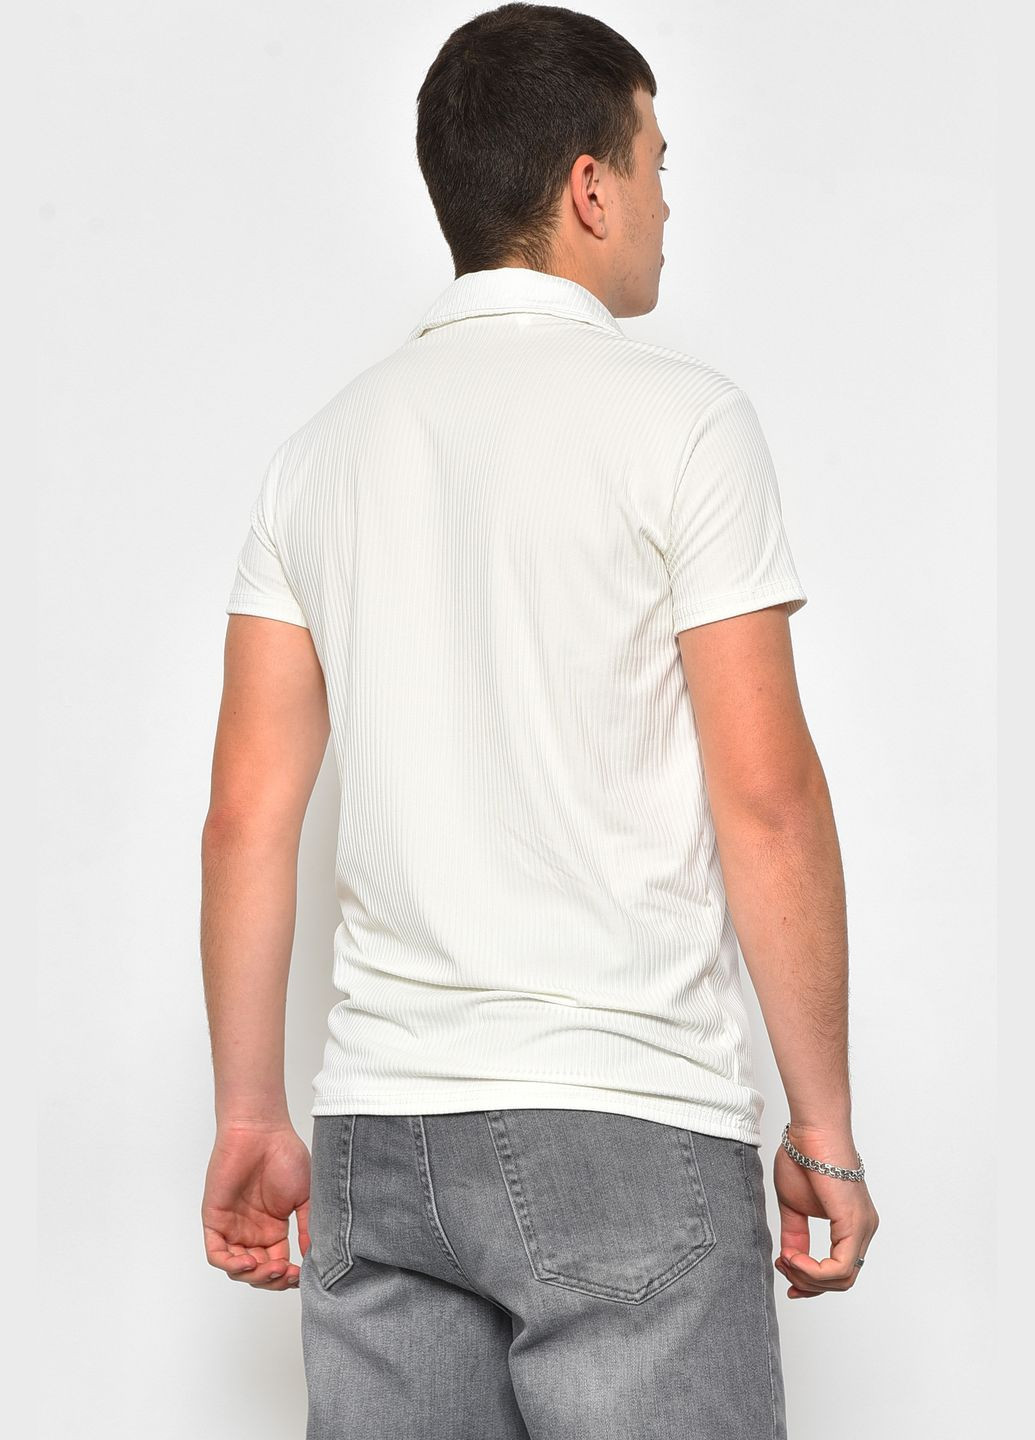 Біла футболка чоловіча поло білого кольору Let's Shop